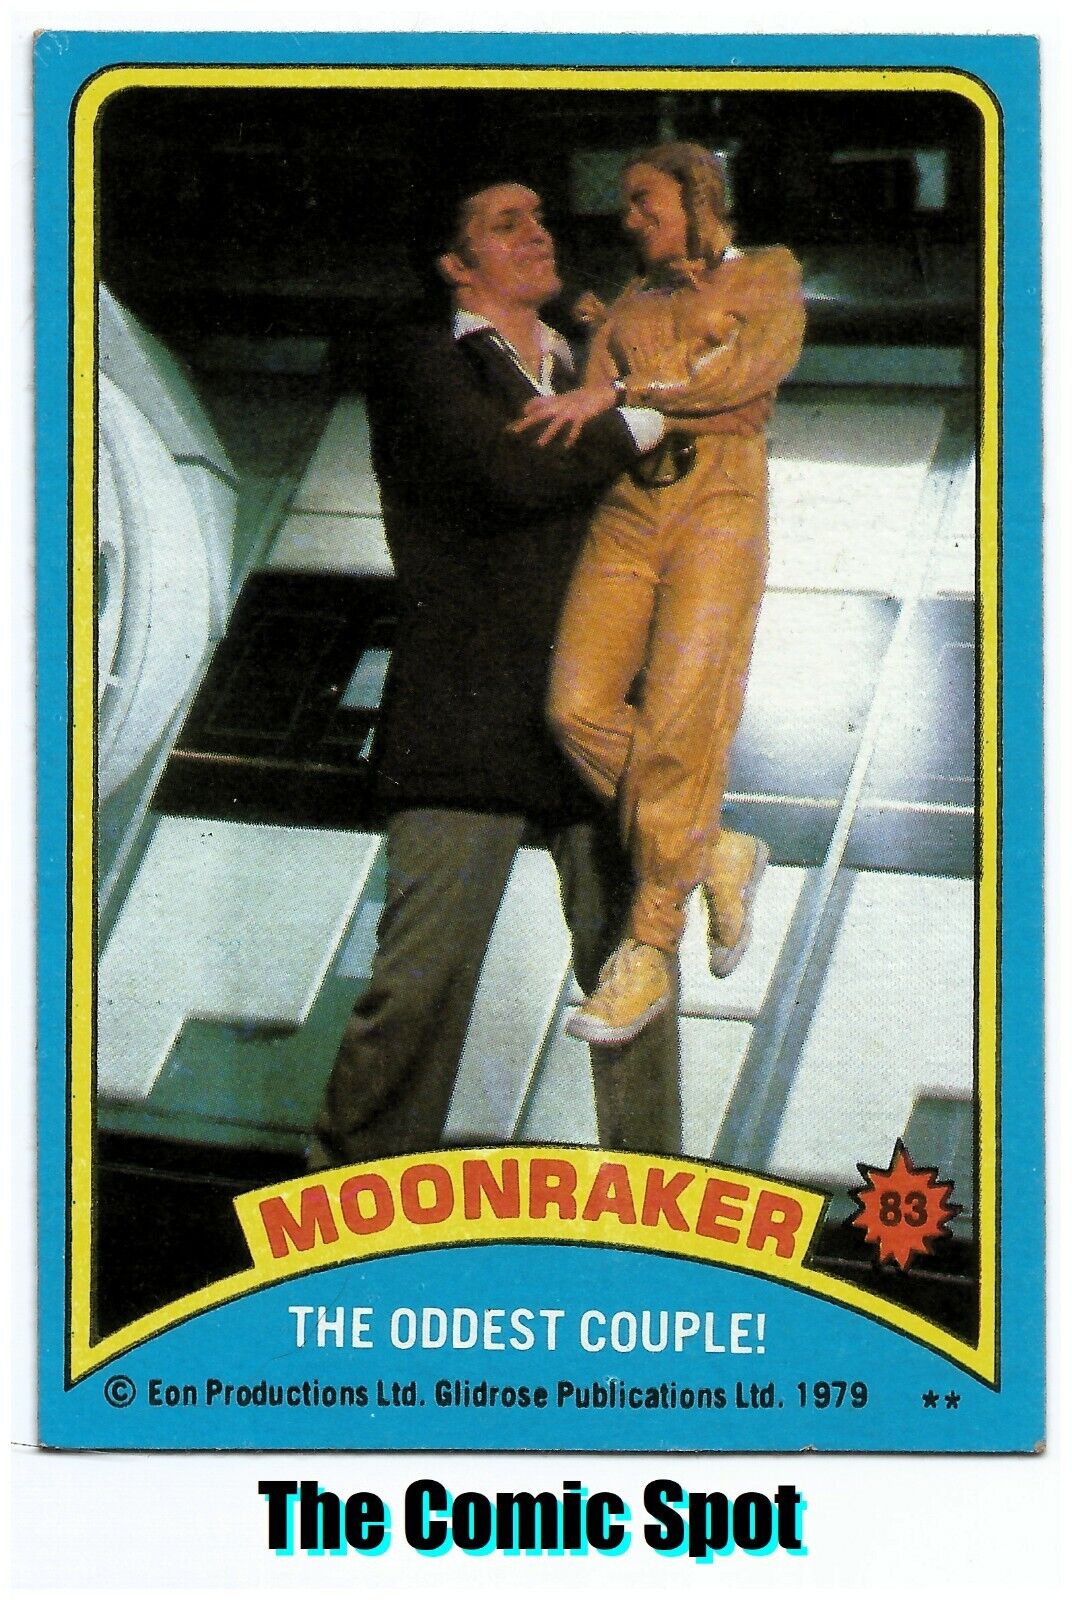 1979 TOPPS JAMES BOND 007 MOONRAKER ~ THE ODDEST COUPLE #83 ~ TRADING CARD